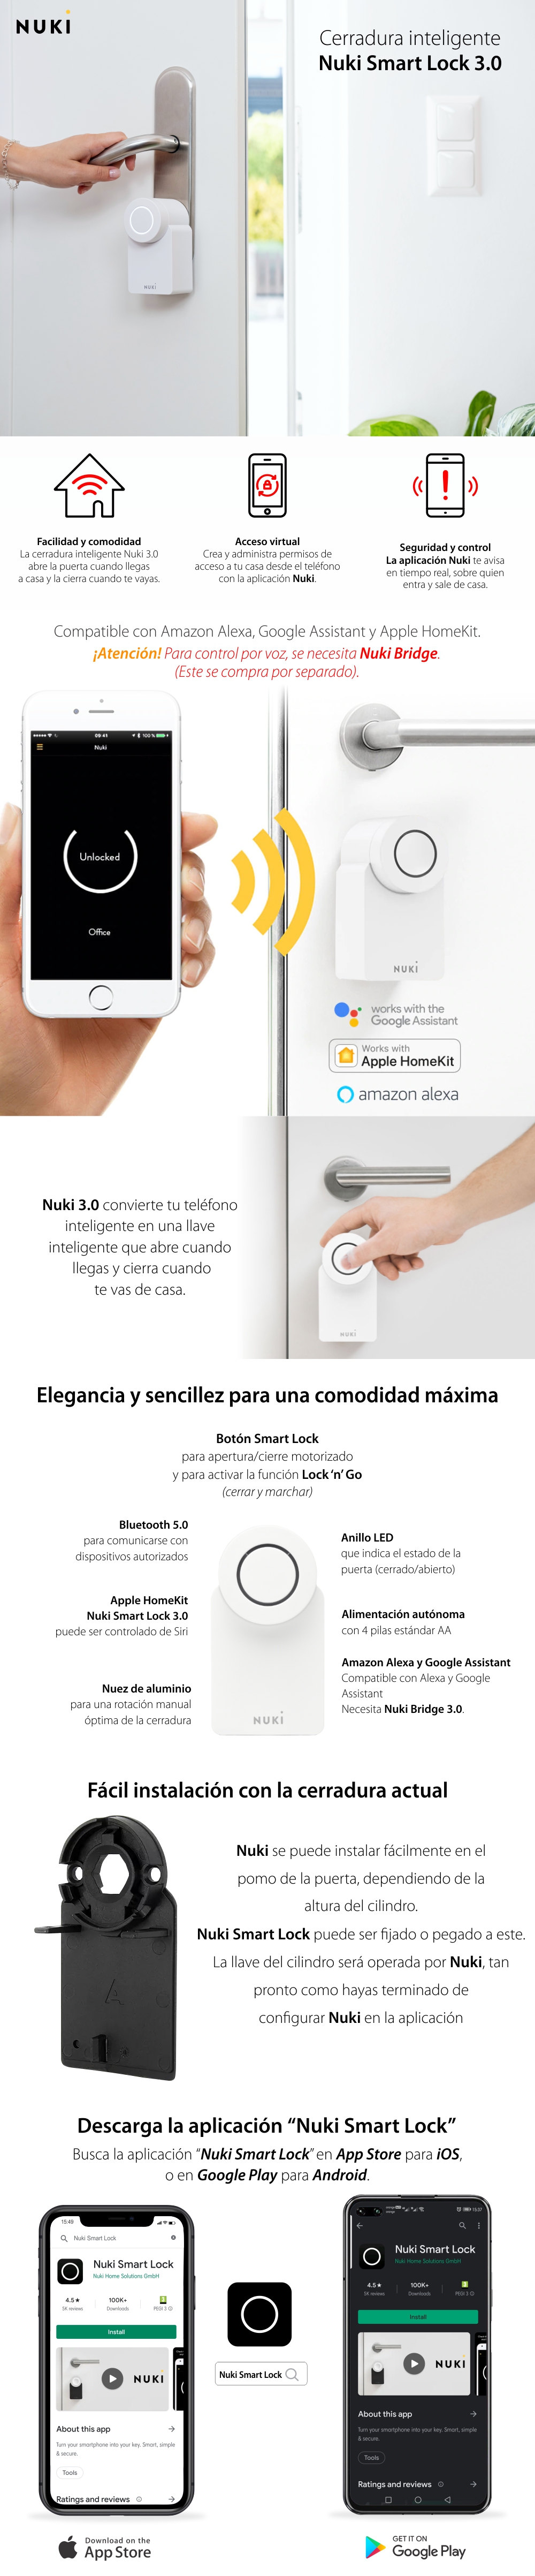 Cerradura inteligente Nuki Smart Lock 3.0, Inalámbrico, Bluetooth 5.0, Control desde aplicación, Alcance de detección 10 m